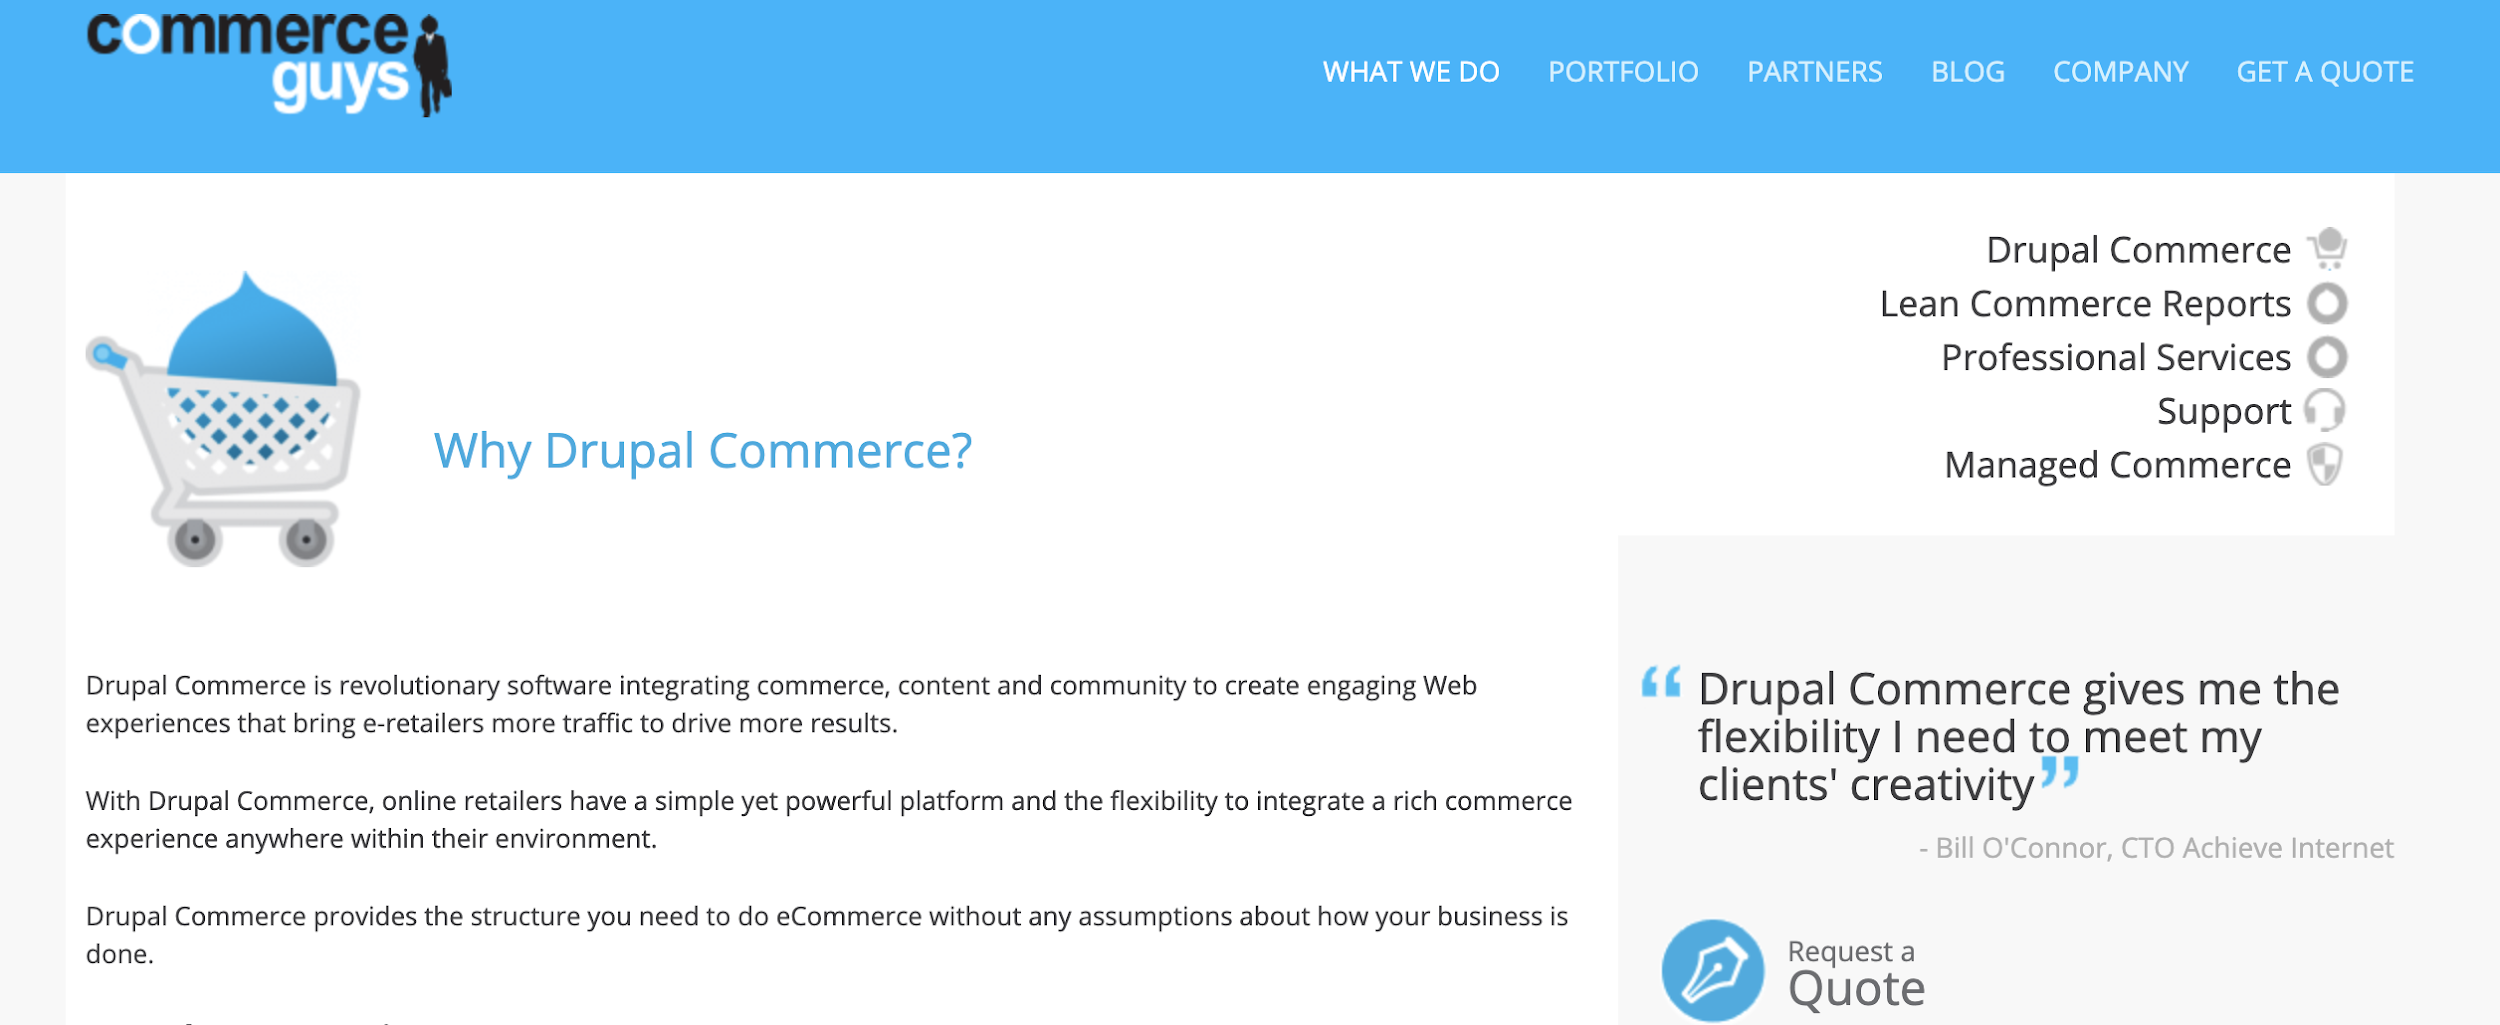 Drupal como exemplo de plataforma de ecommerce